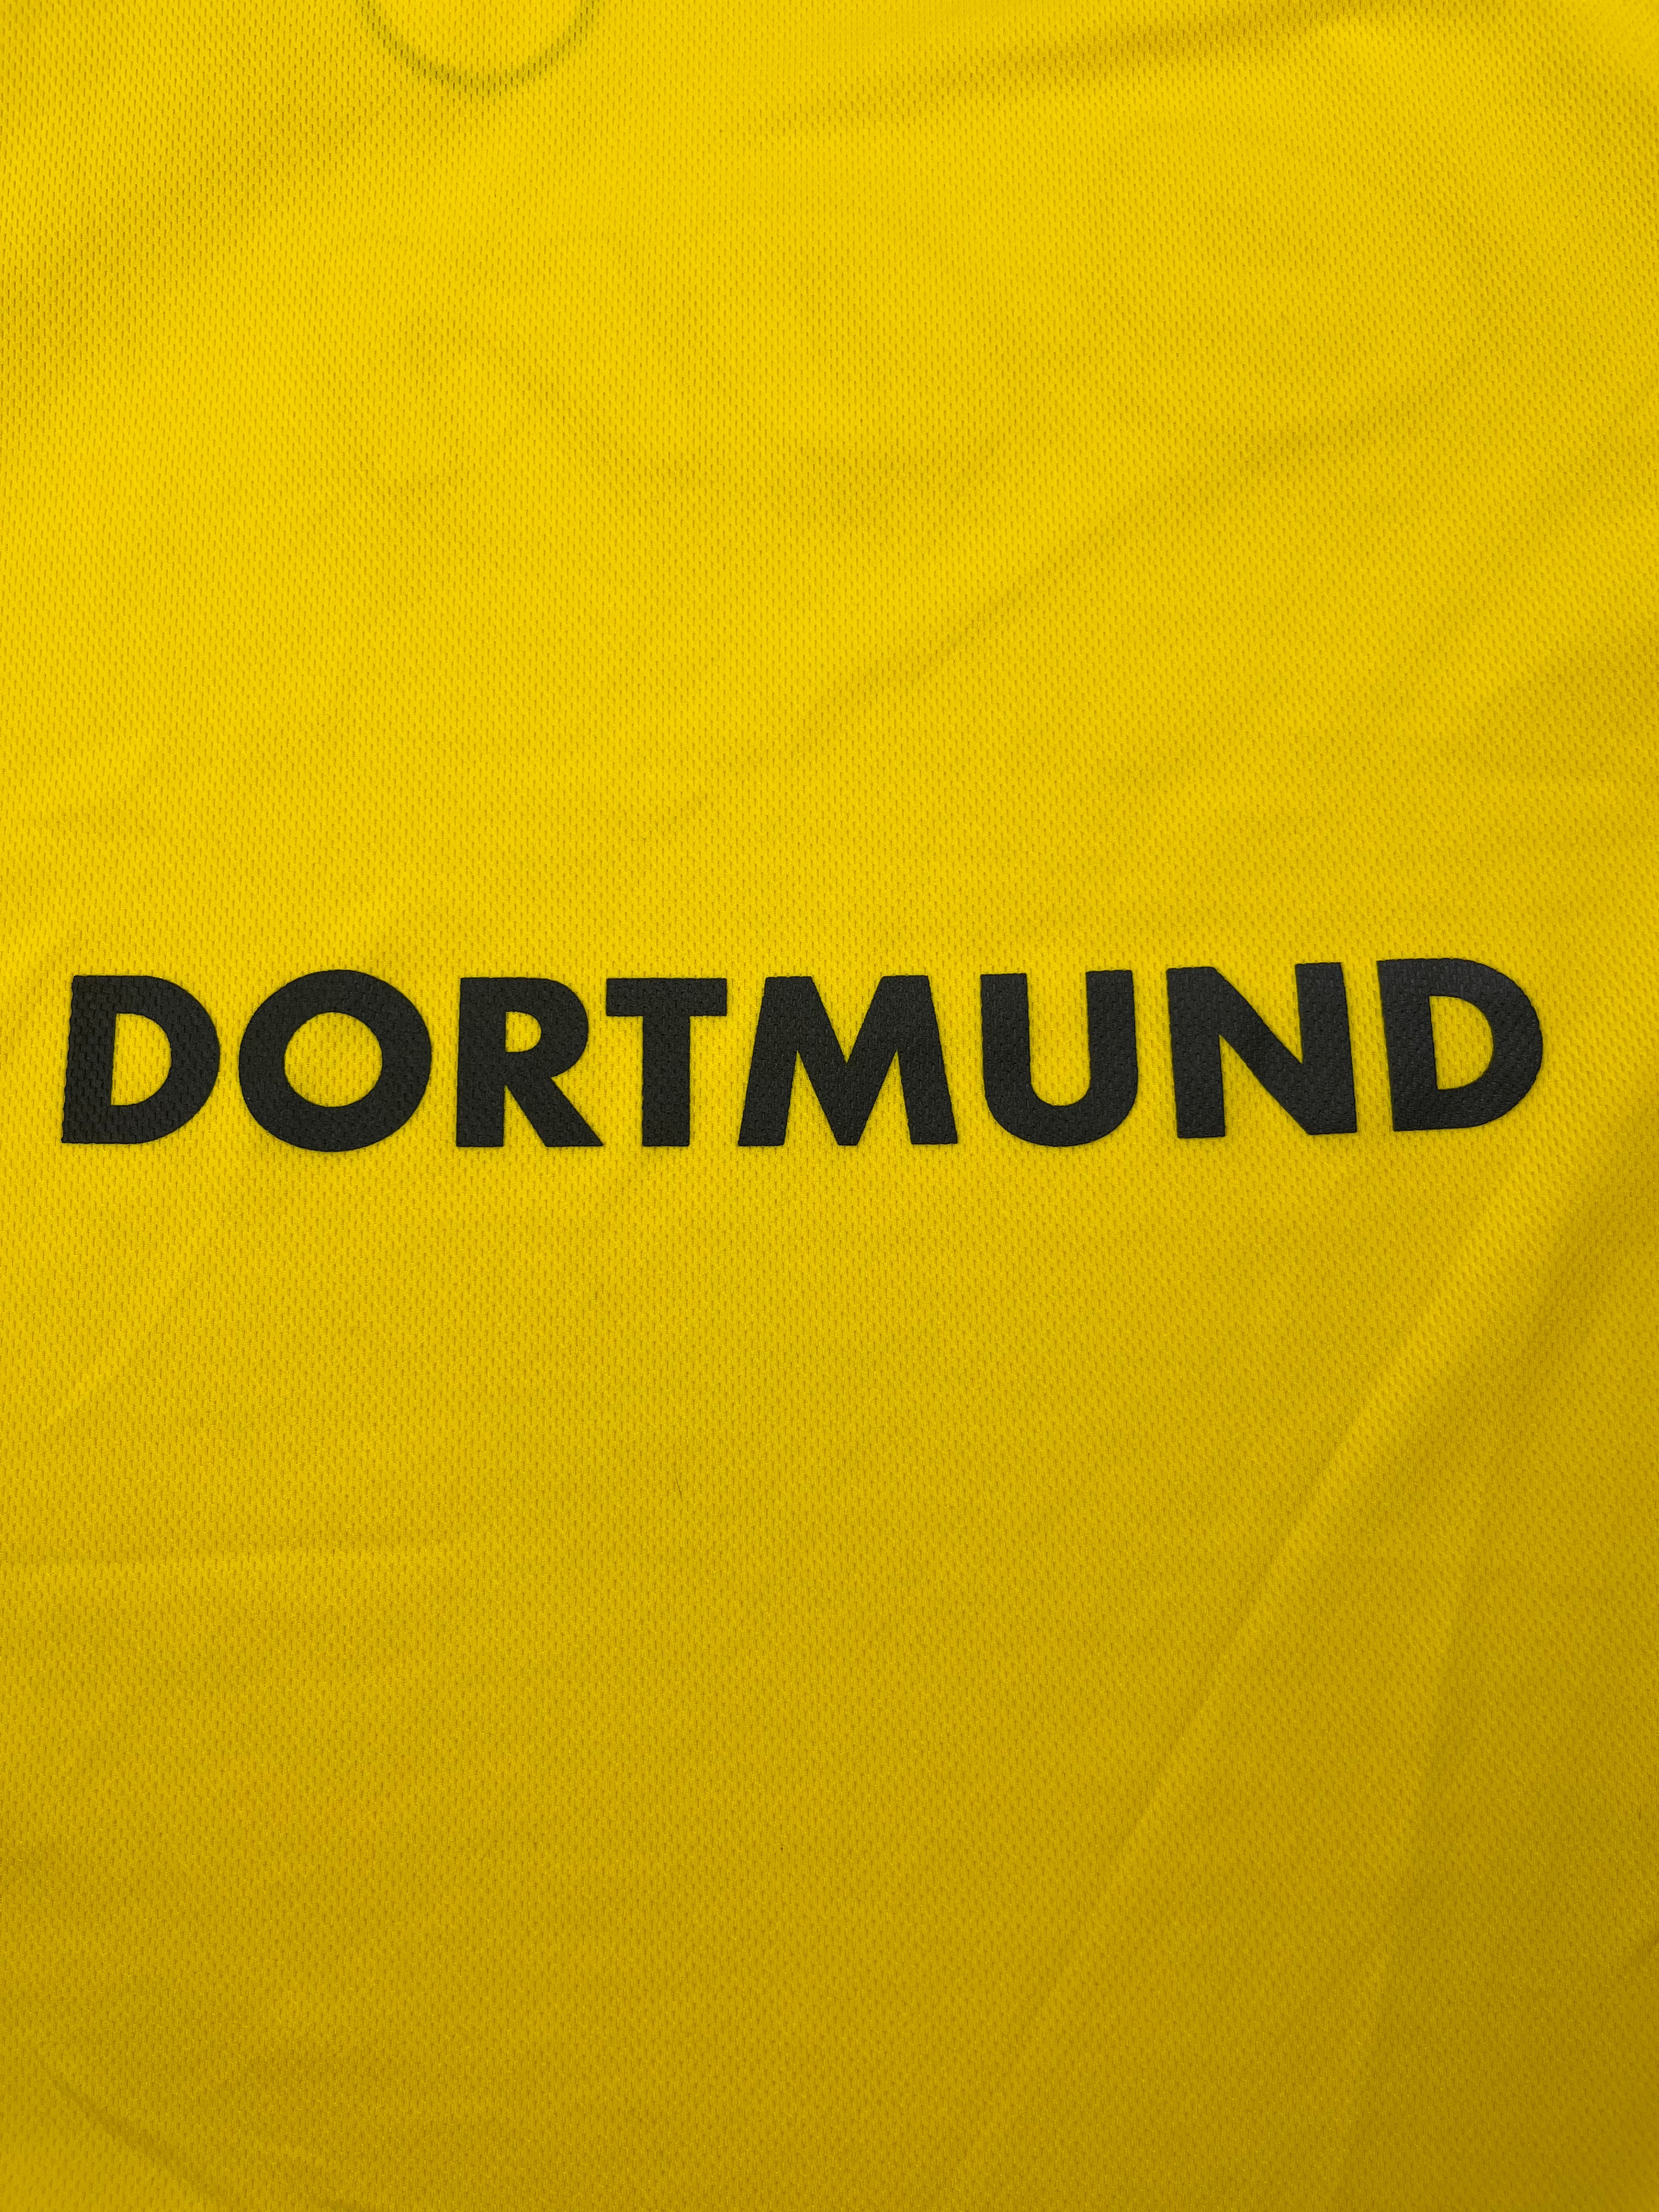 2001/02 Borussia Dortmund Domicile L/S Maillot (XXL) 9/10 